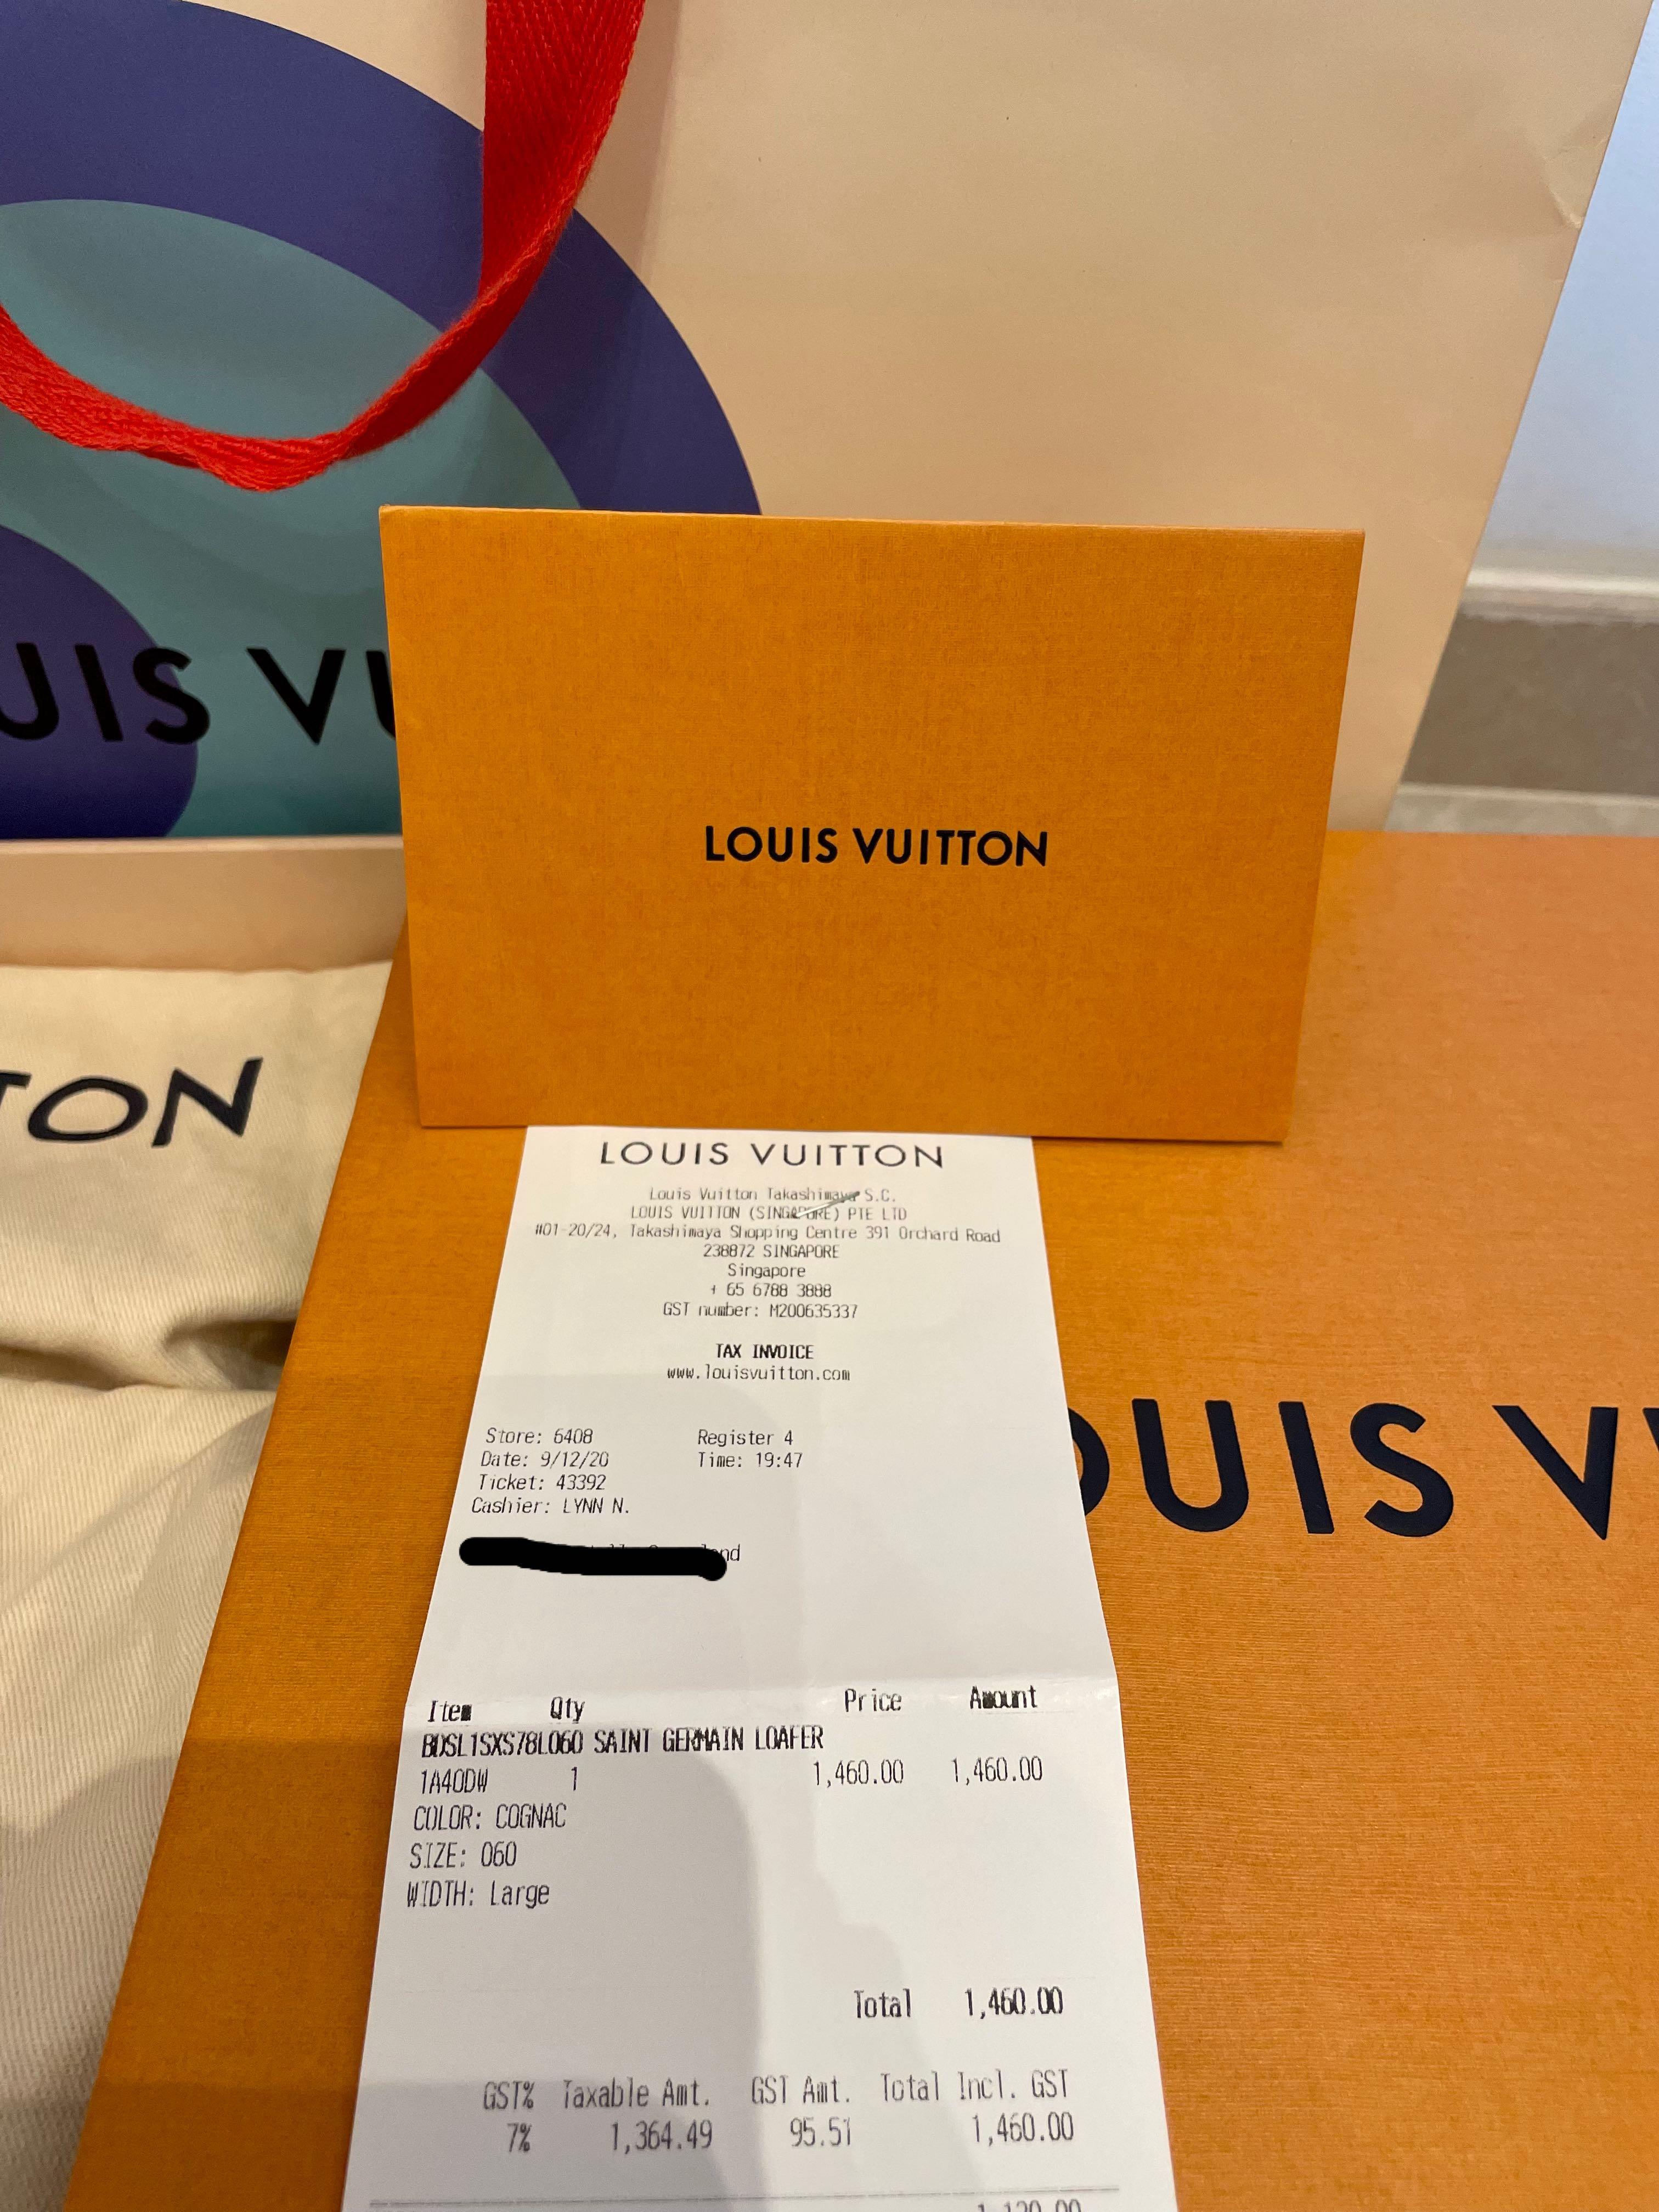 LouisVuitton SAINT GERMAIN LOAFER  #buyma_ps  #buyma_us #blackfriday #christmas #Vuitton #LouisVuitton…